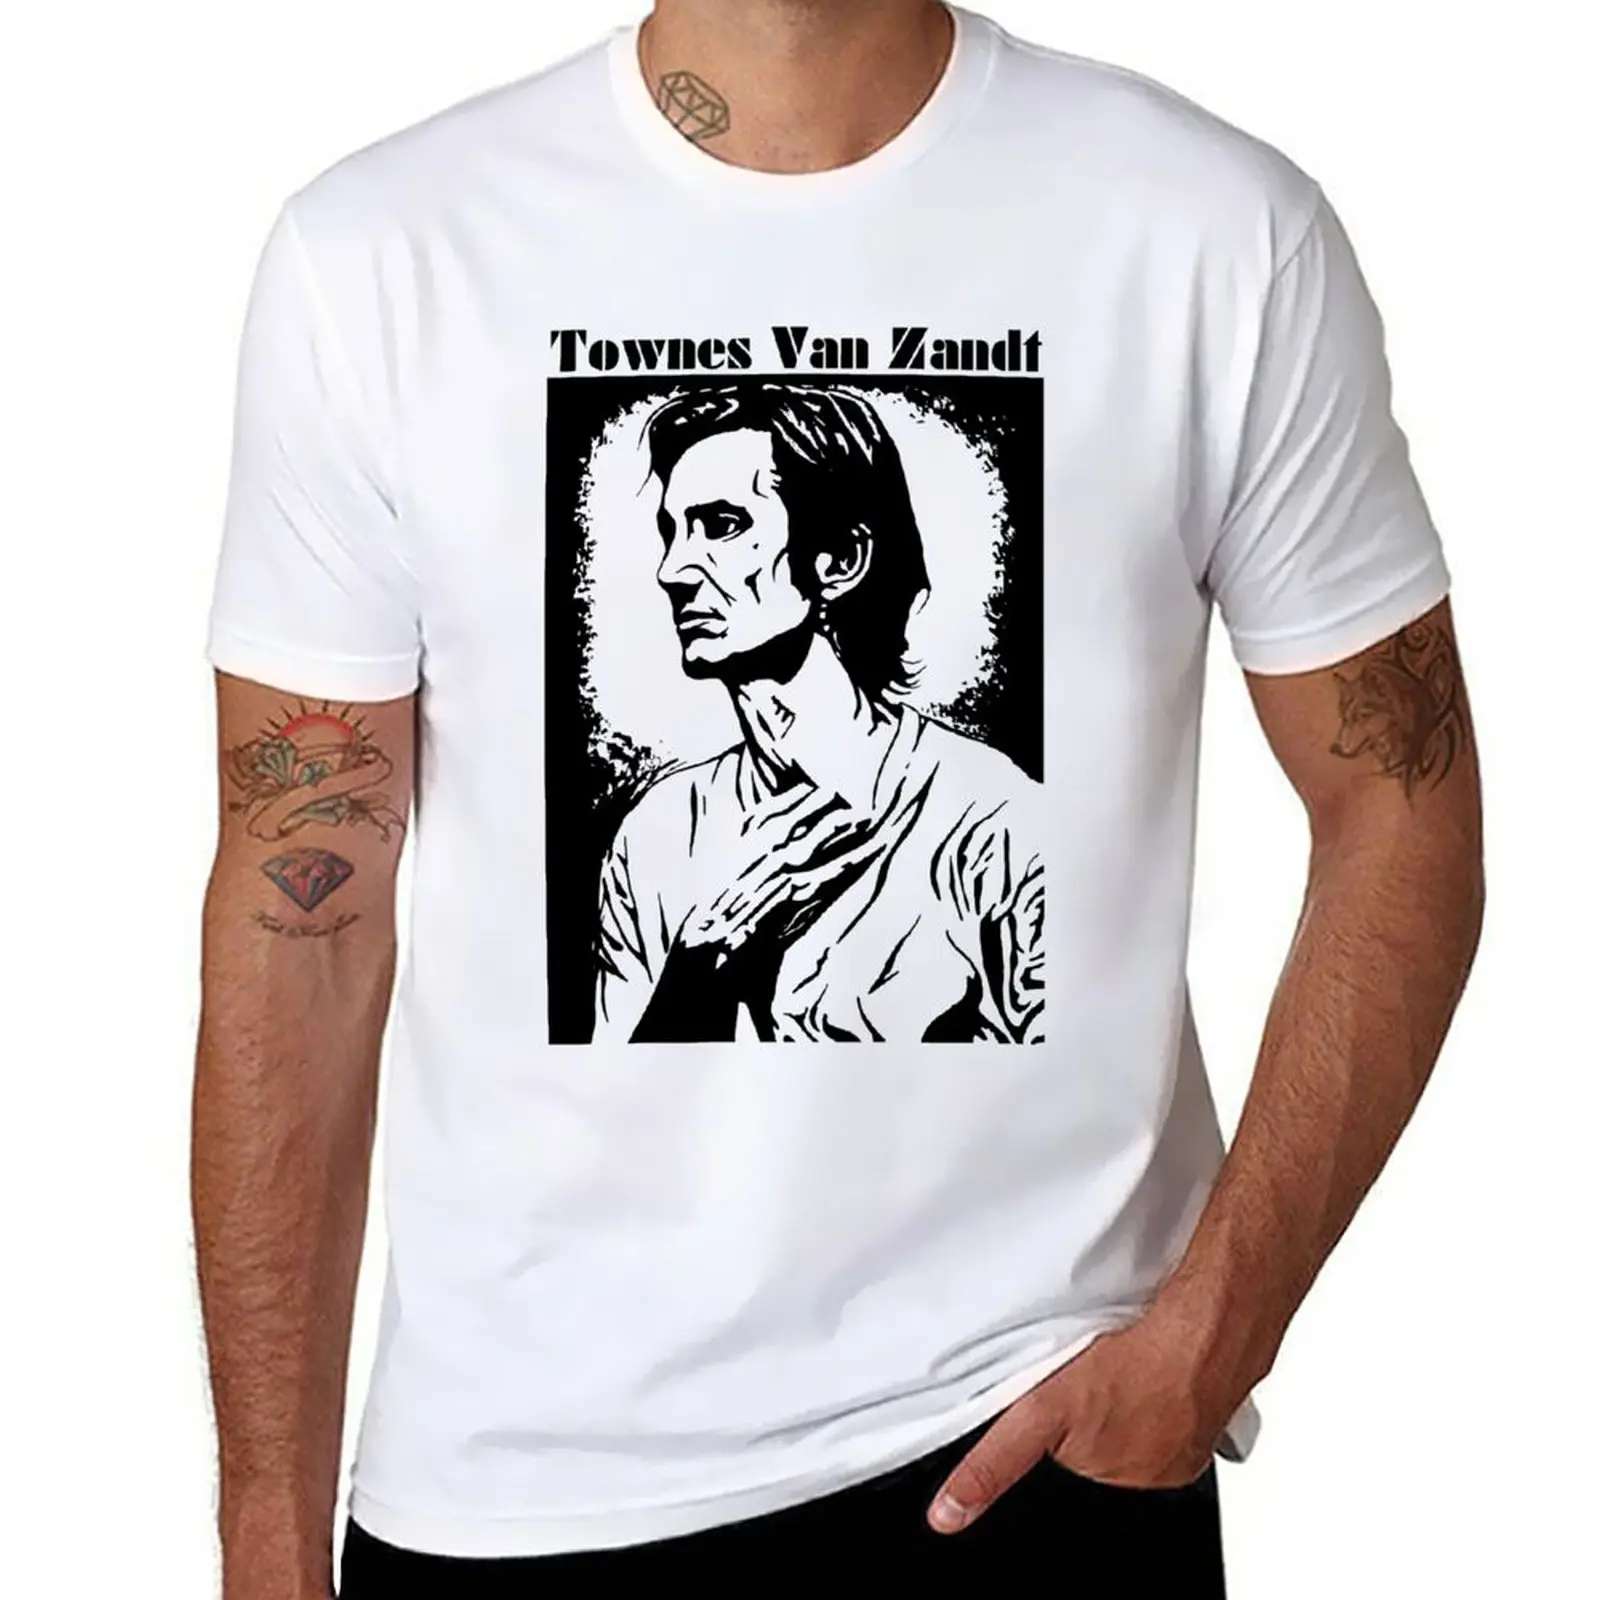 

Футболка Townes Van Zandt, милые женские топы, мужские высокие футболки